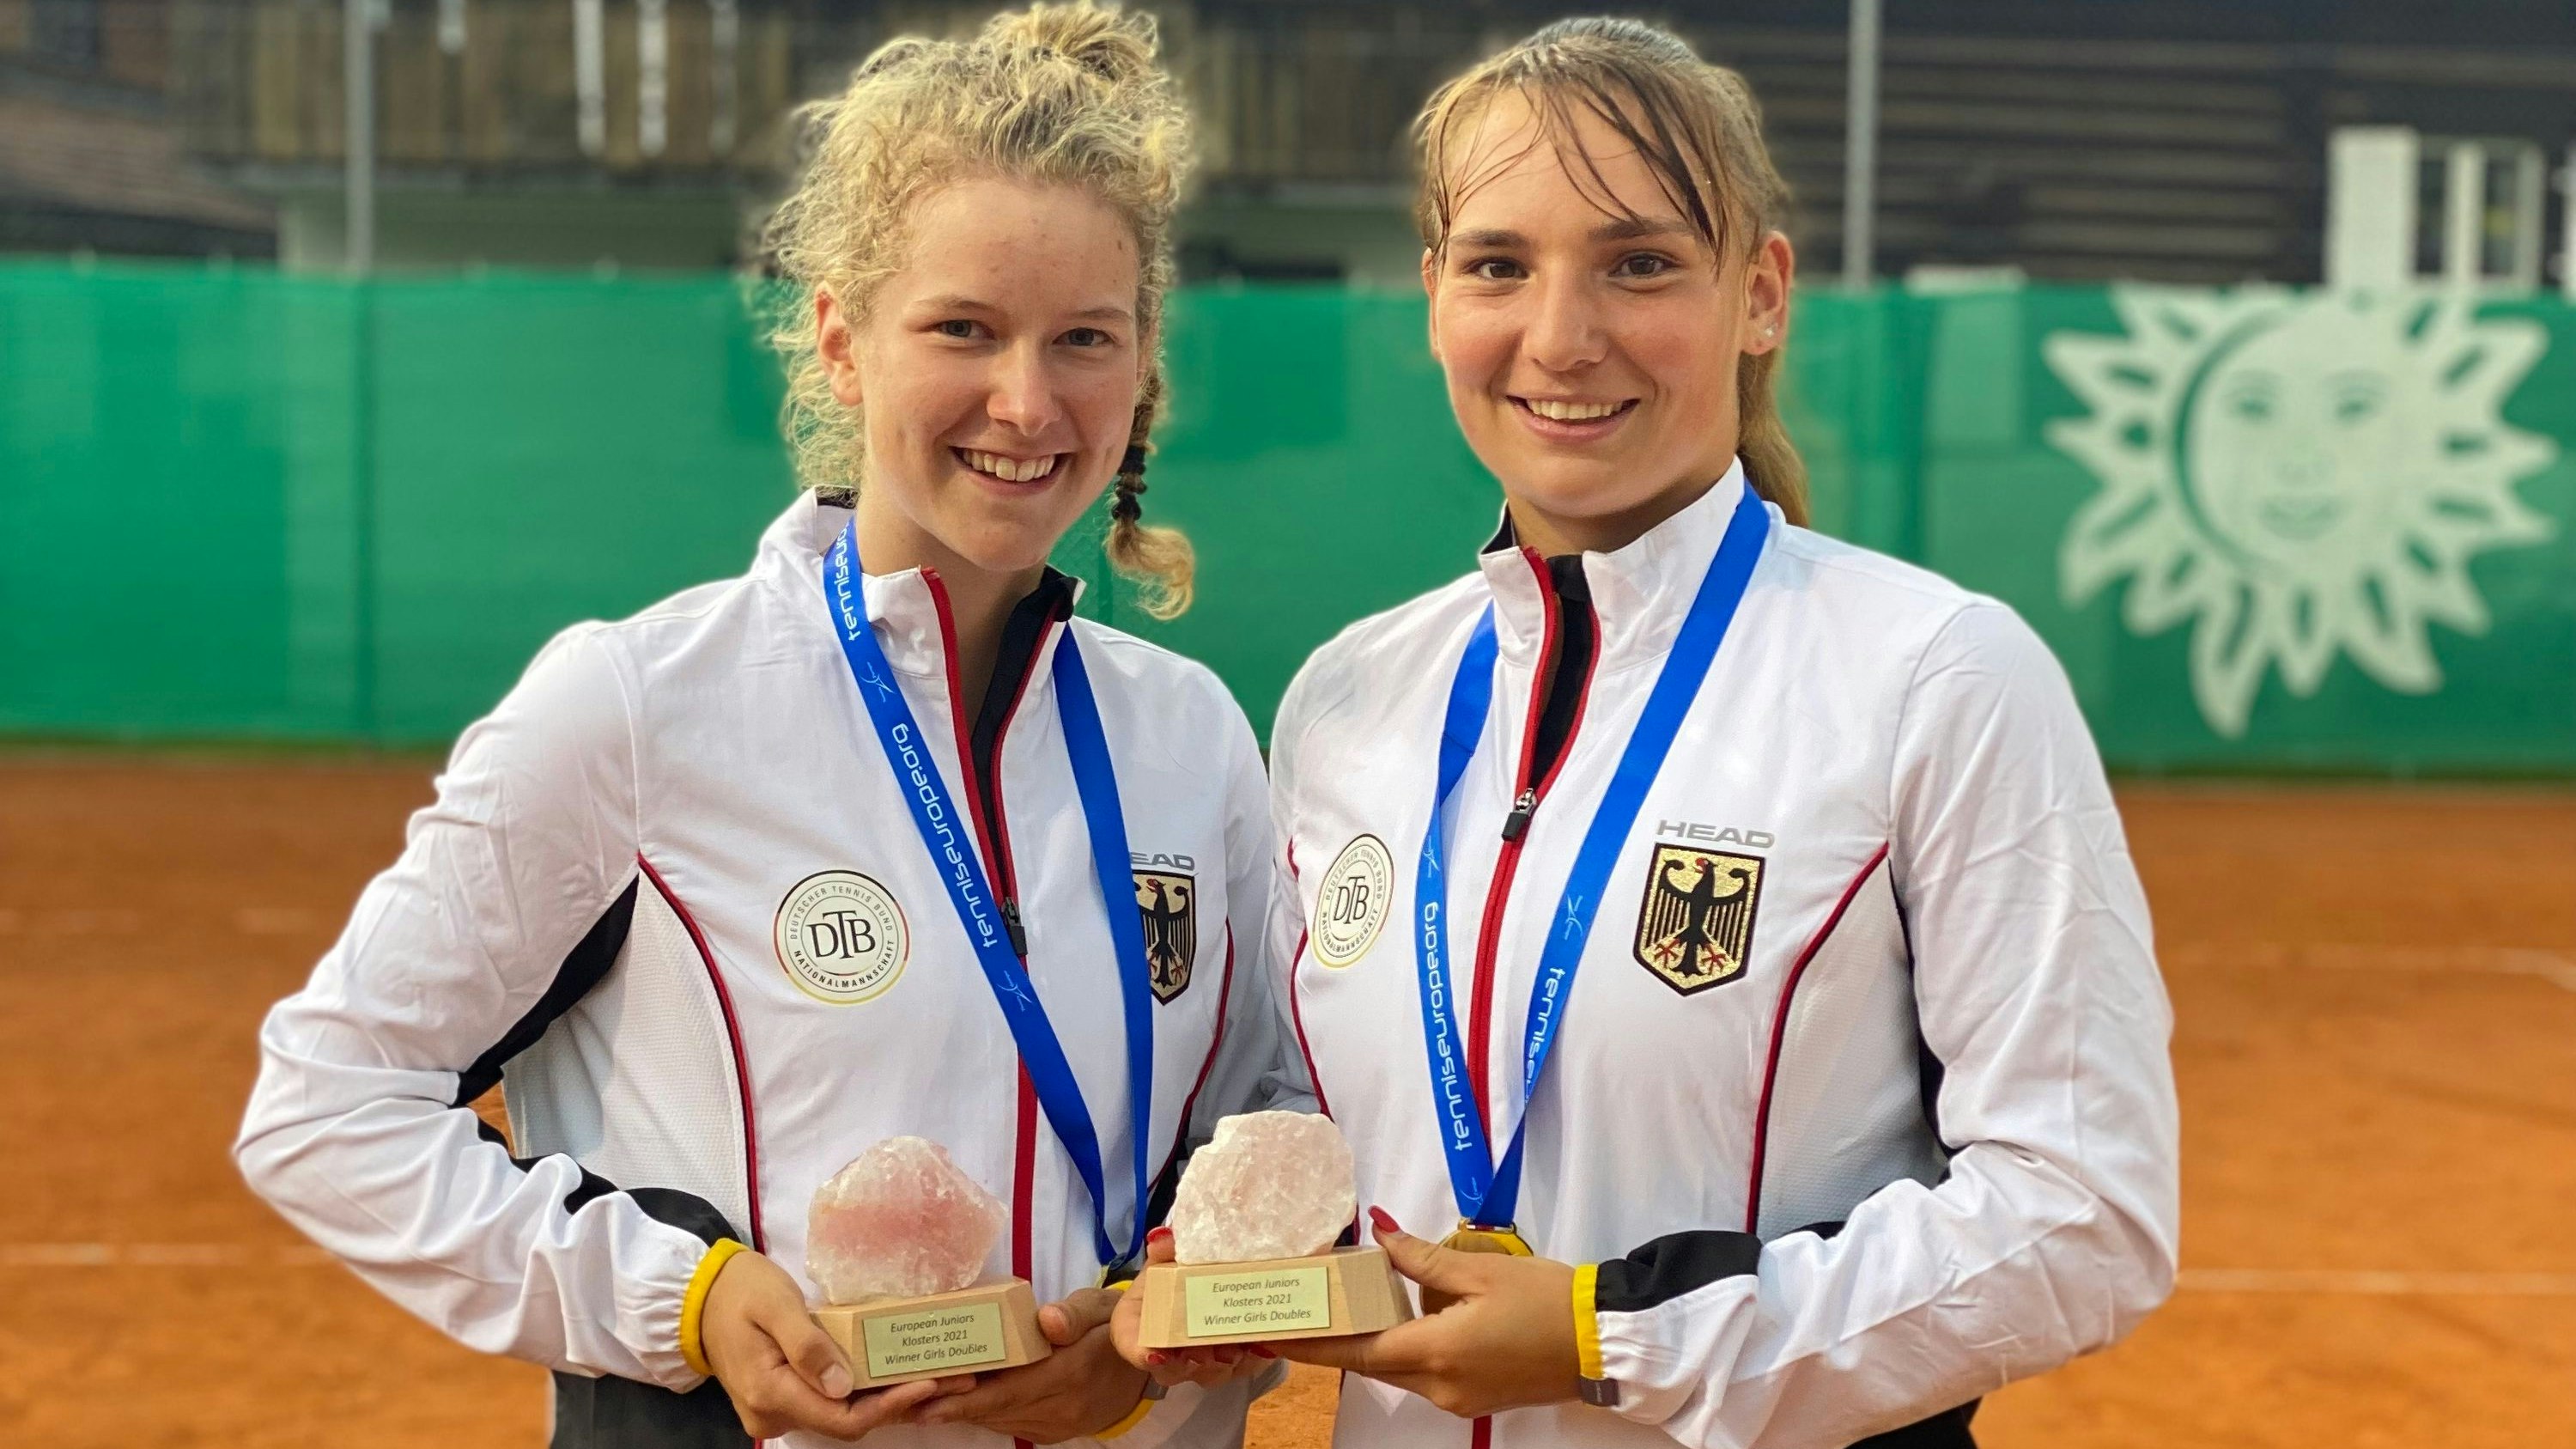 An Nummer 3 gesetzt – und am Ende die Nummer eins: Julia Middendorf (links) und Mara Guth gewannen Gold im Doppel bei der U-18-Europameisterschaft in Klosters. Foto: Tennis Europe